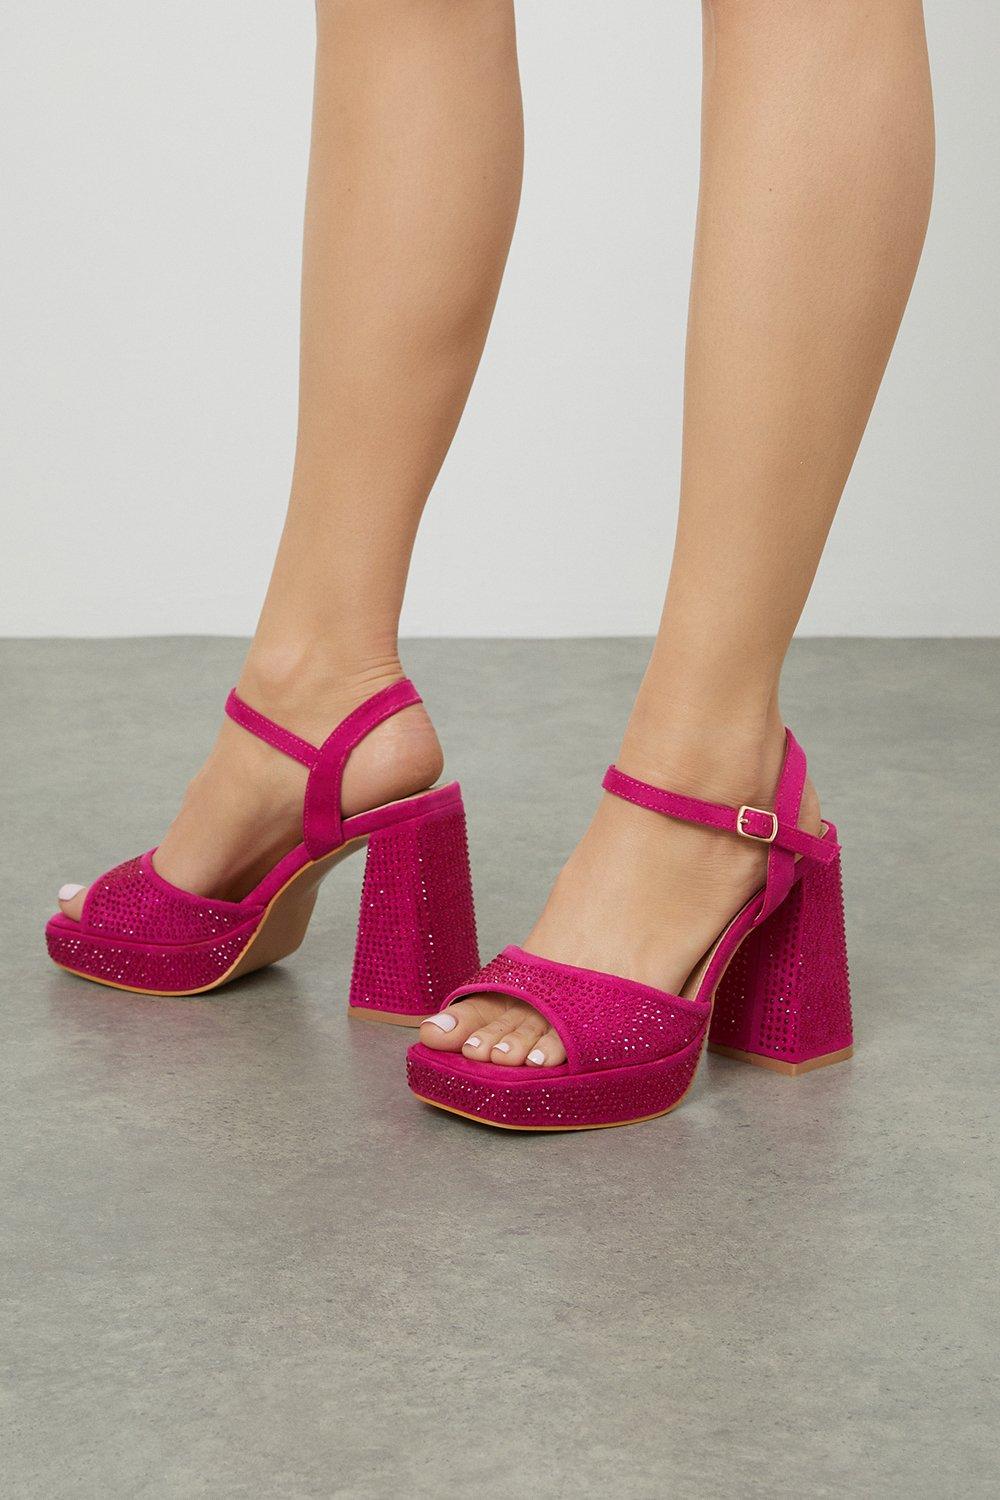 Women's Bella Sparkly Platform Heel Sandals - pink - 4